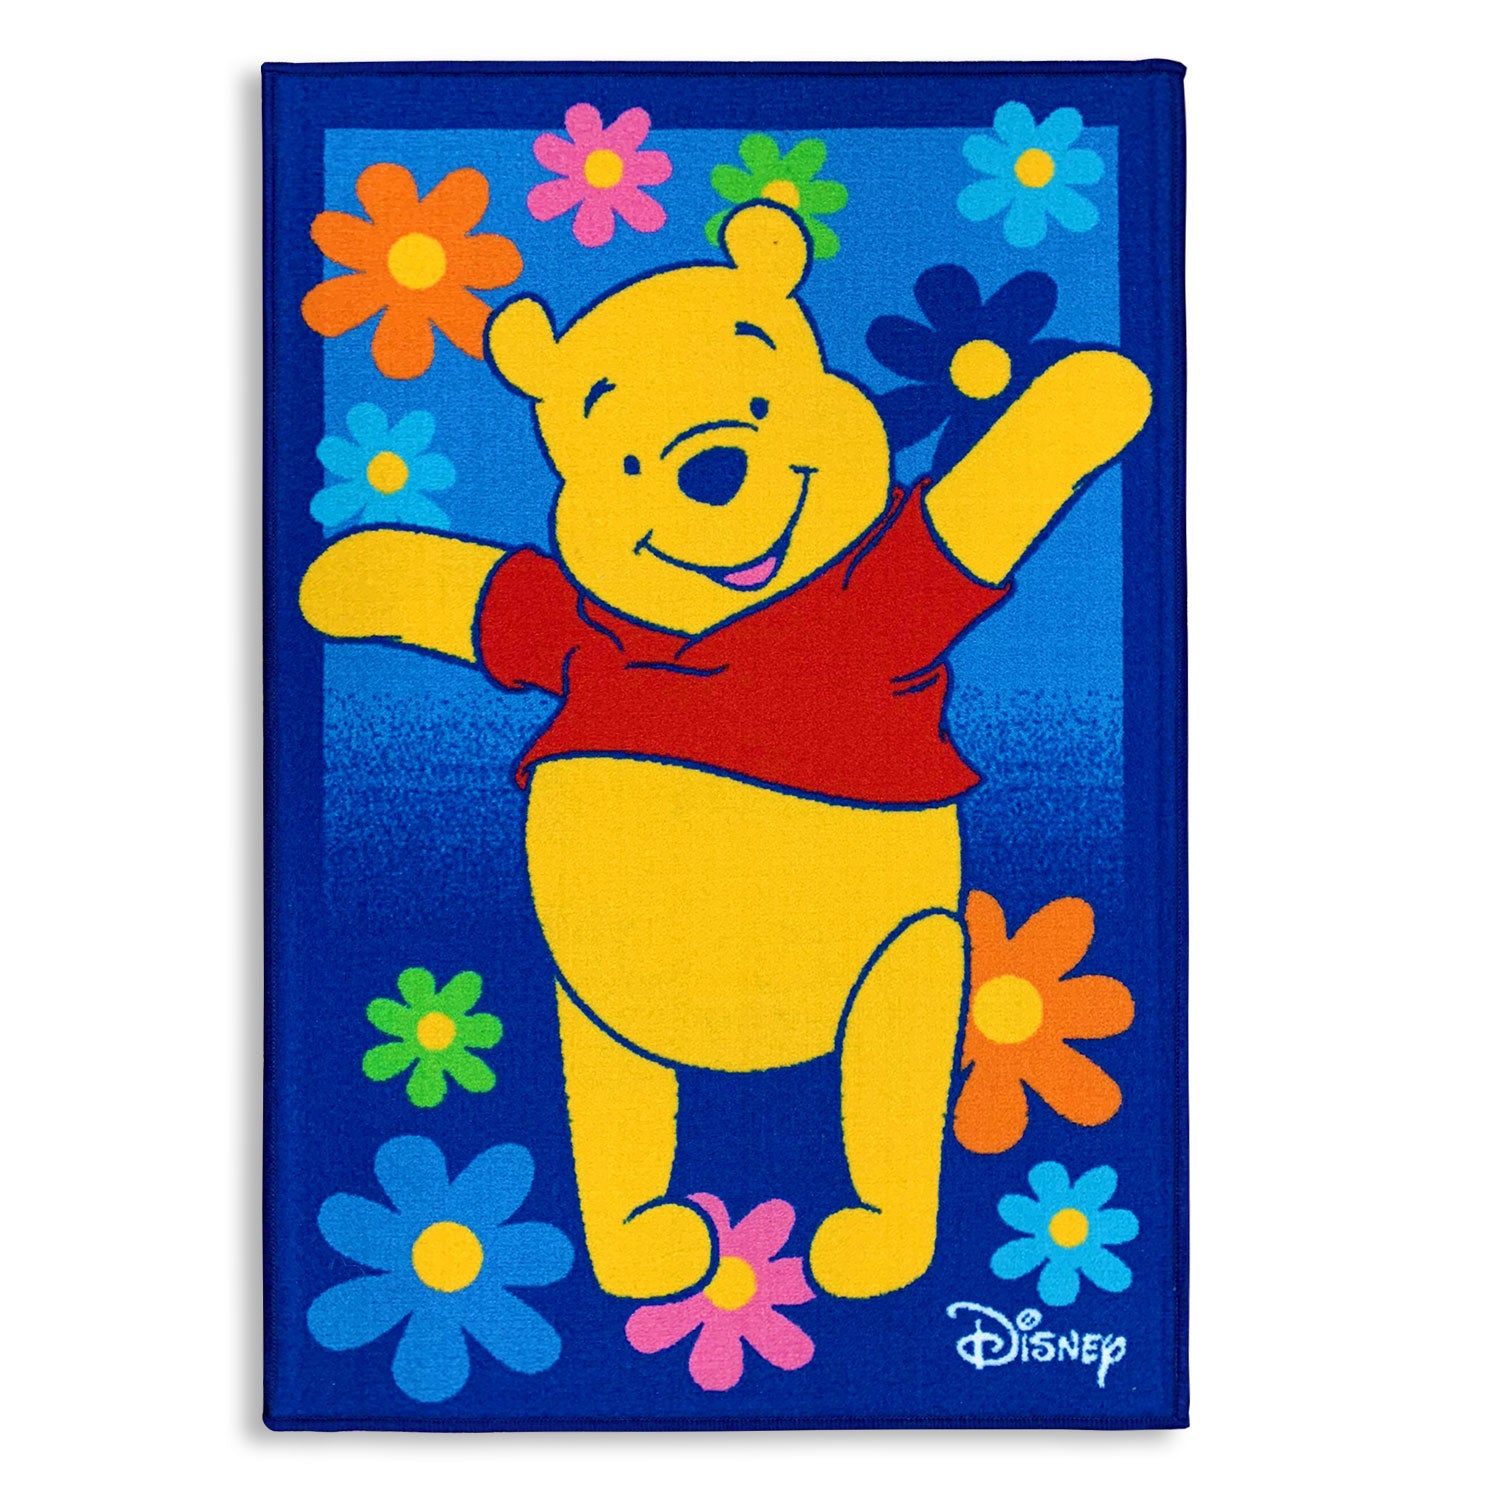 Tappeto antiscivolo cameretta bambini Disney Winnie the Pooh 80x120 cm 4850